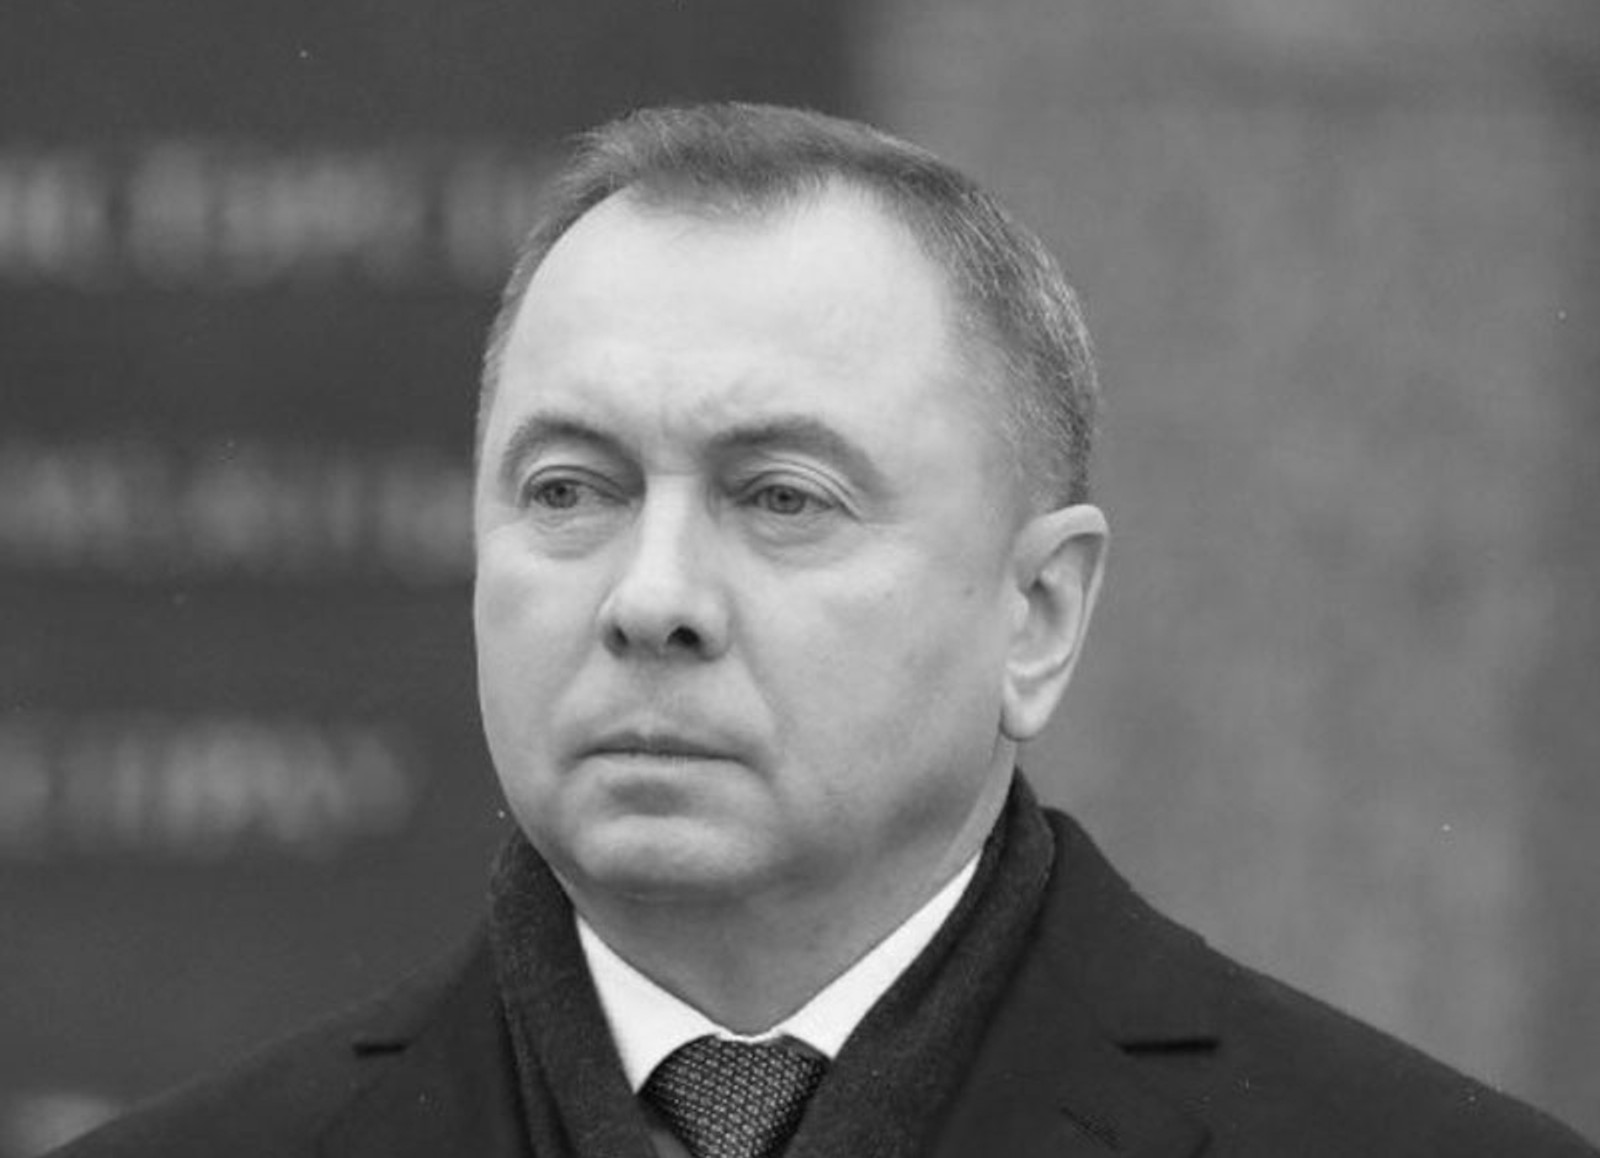 «Наша Ніва»: вероятная причина смерти главы белорусского МИД Макея — самоубийство